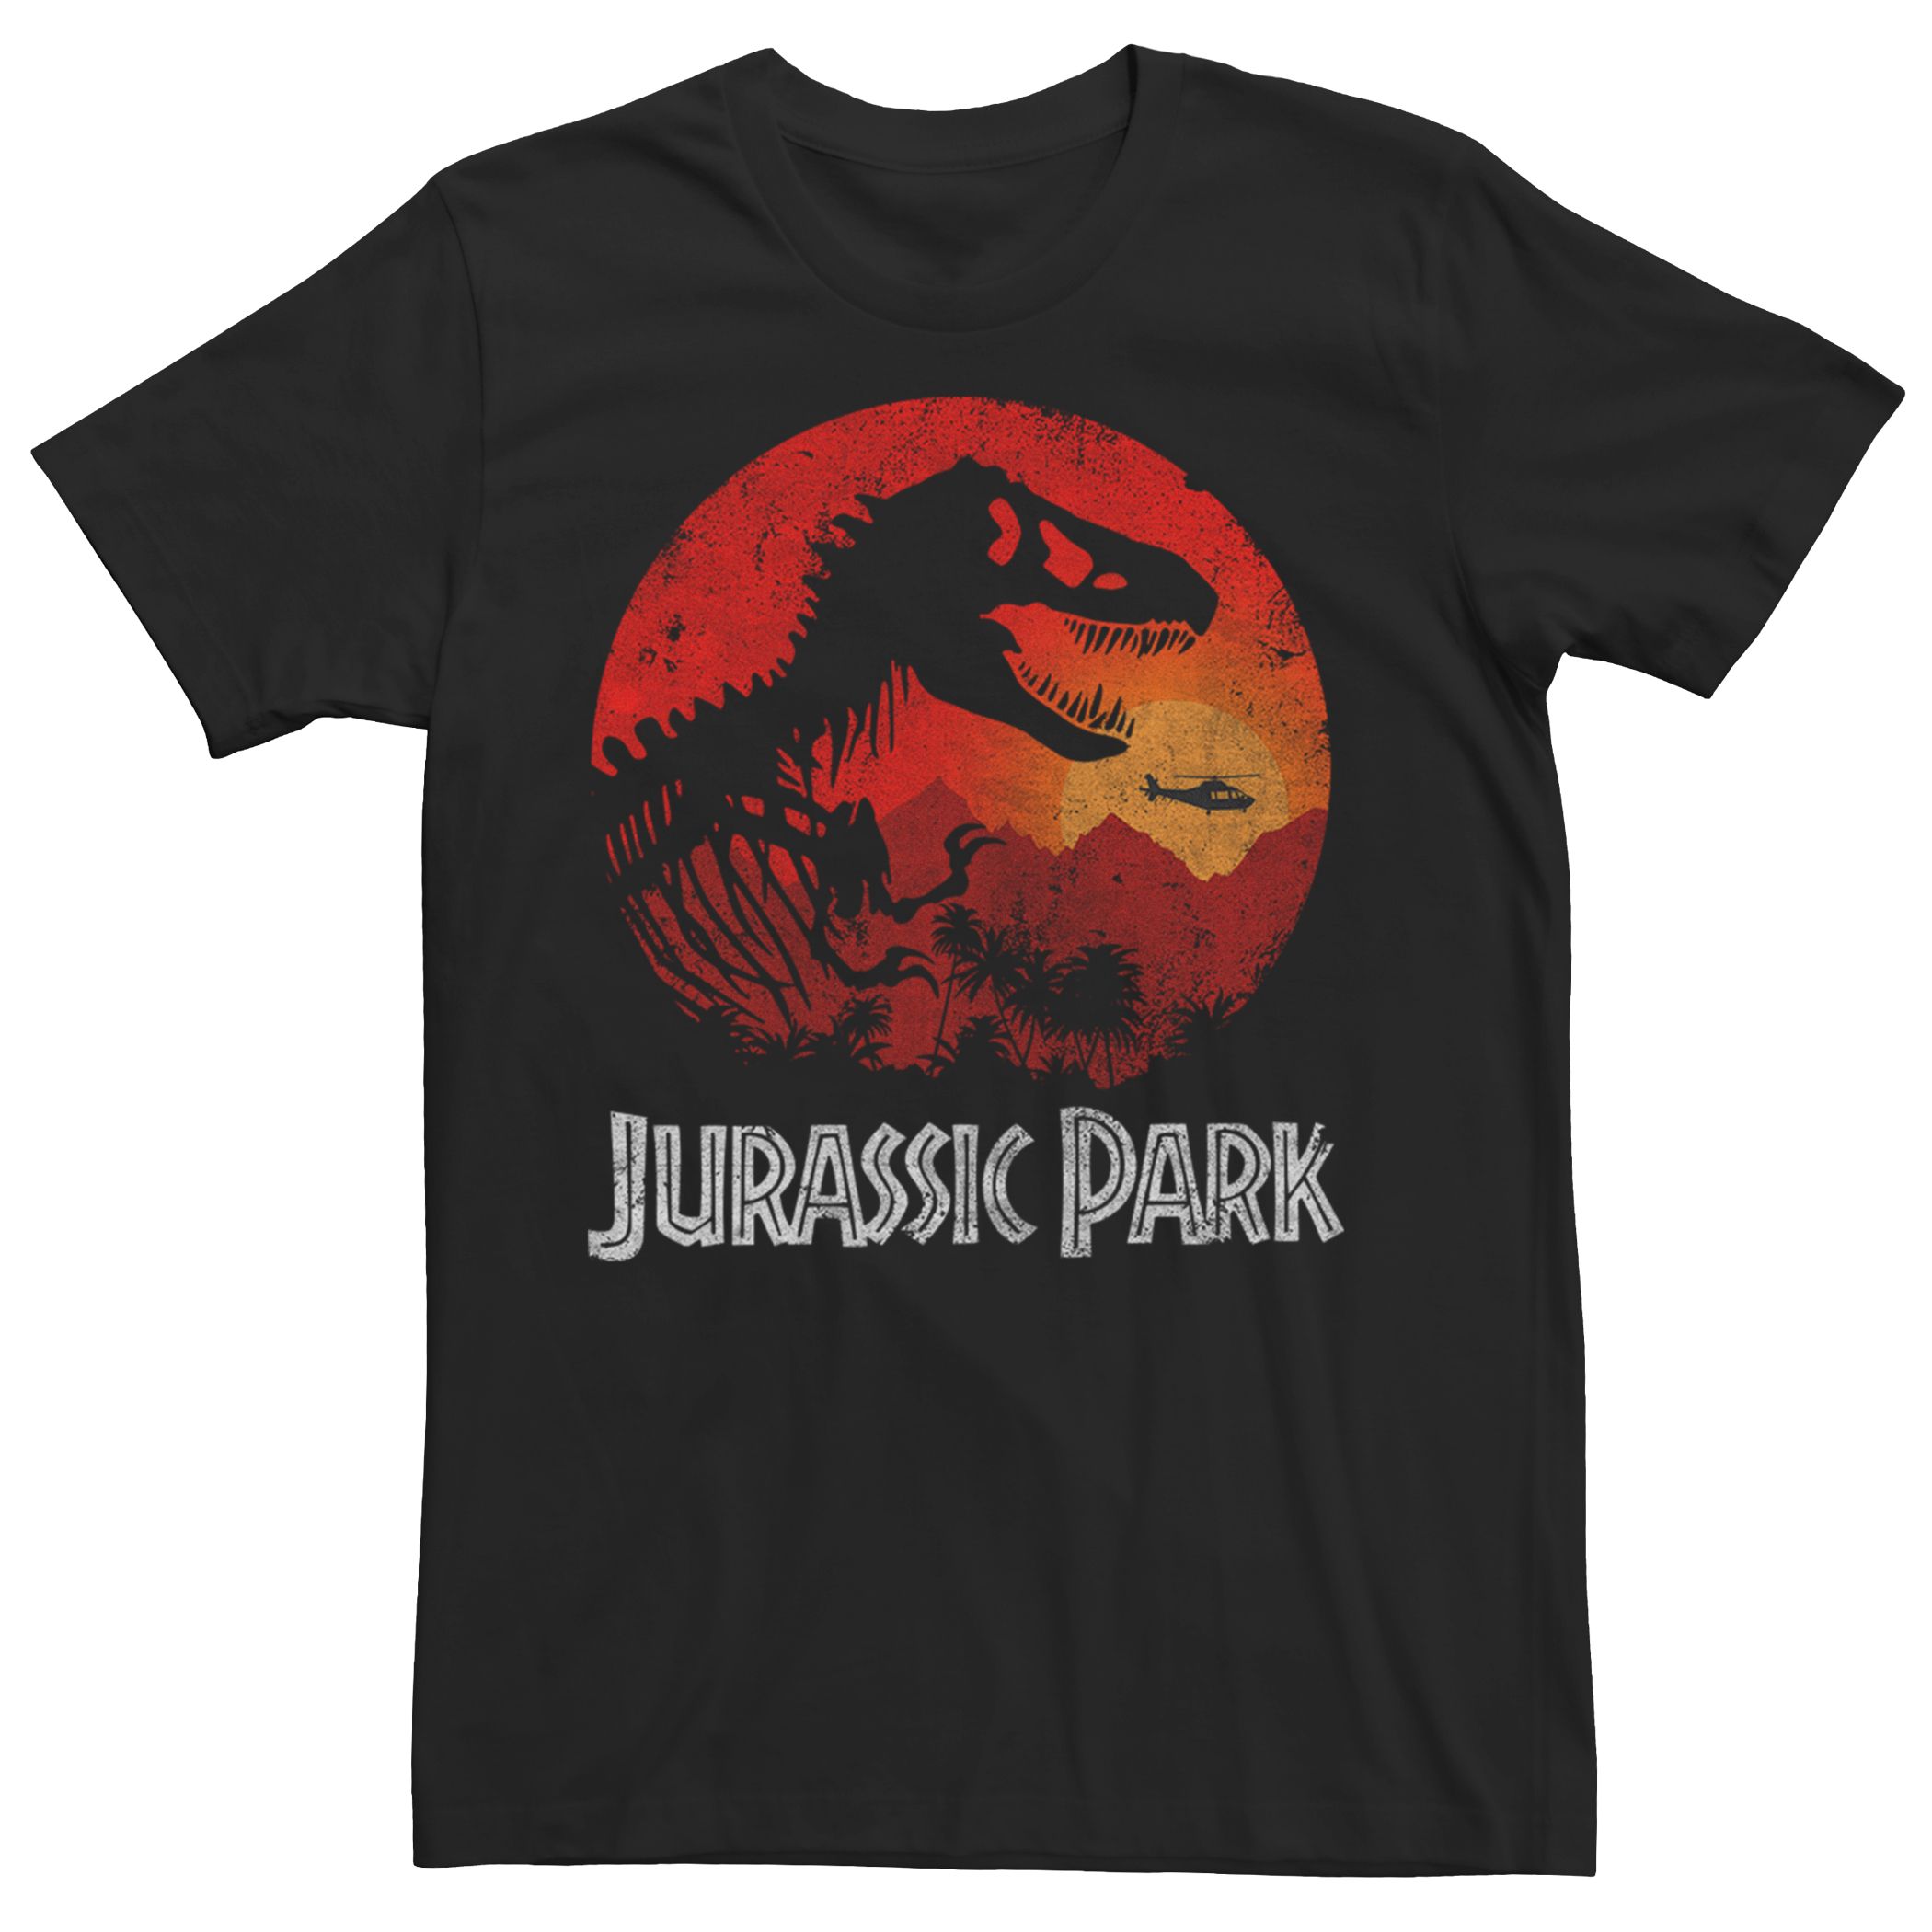 Мужская футболка с логотипом Jurassic Park T-Rex Sunset Licensed Character монета американского парка юрского периода с изображением динозавра позолоченная памятная монета юрского периода подарок для детской ко